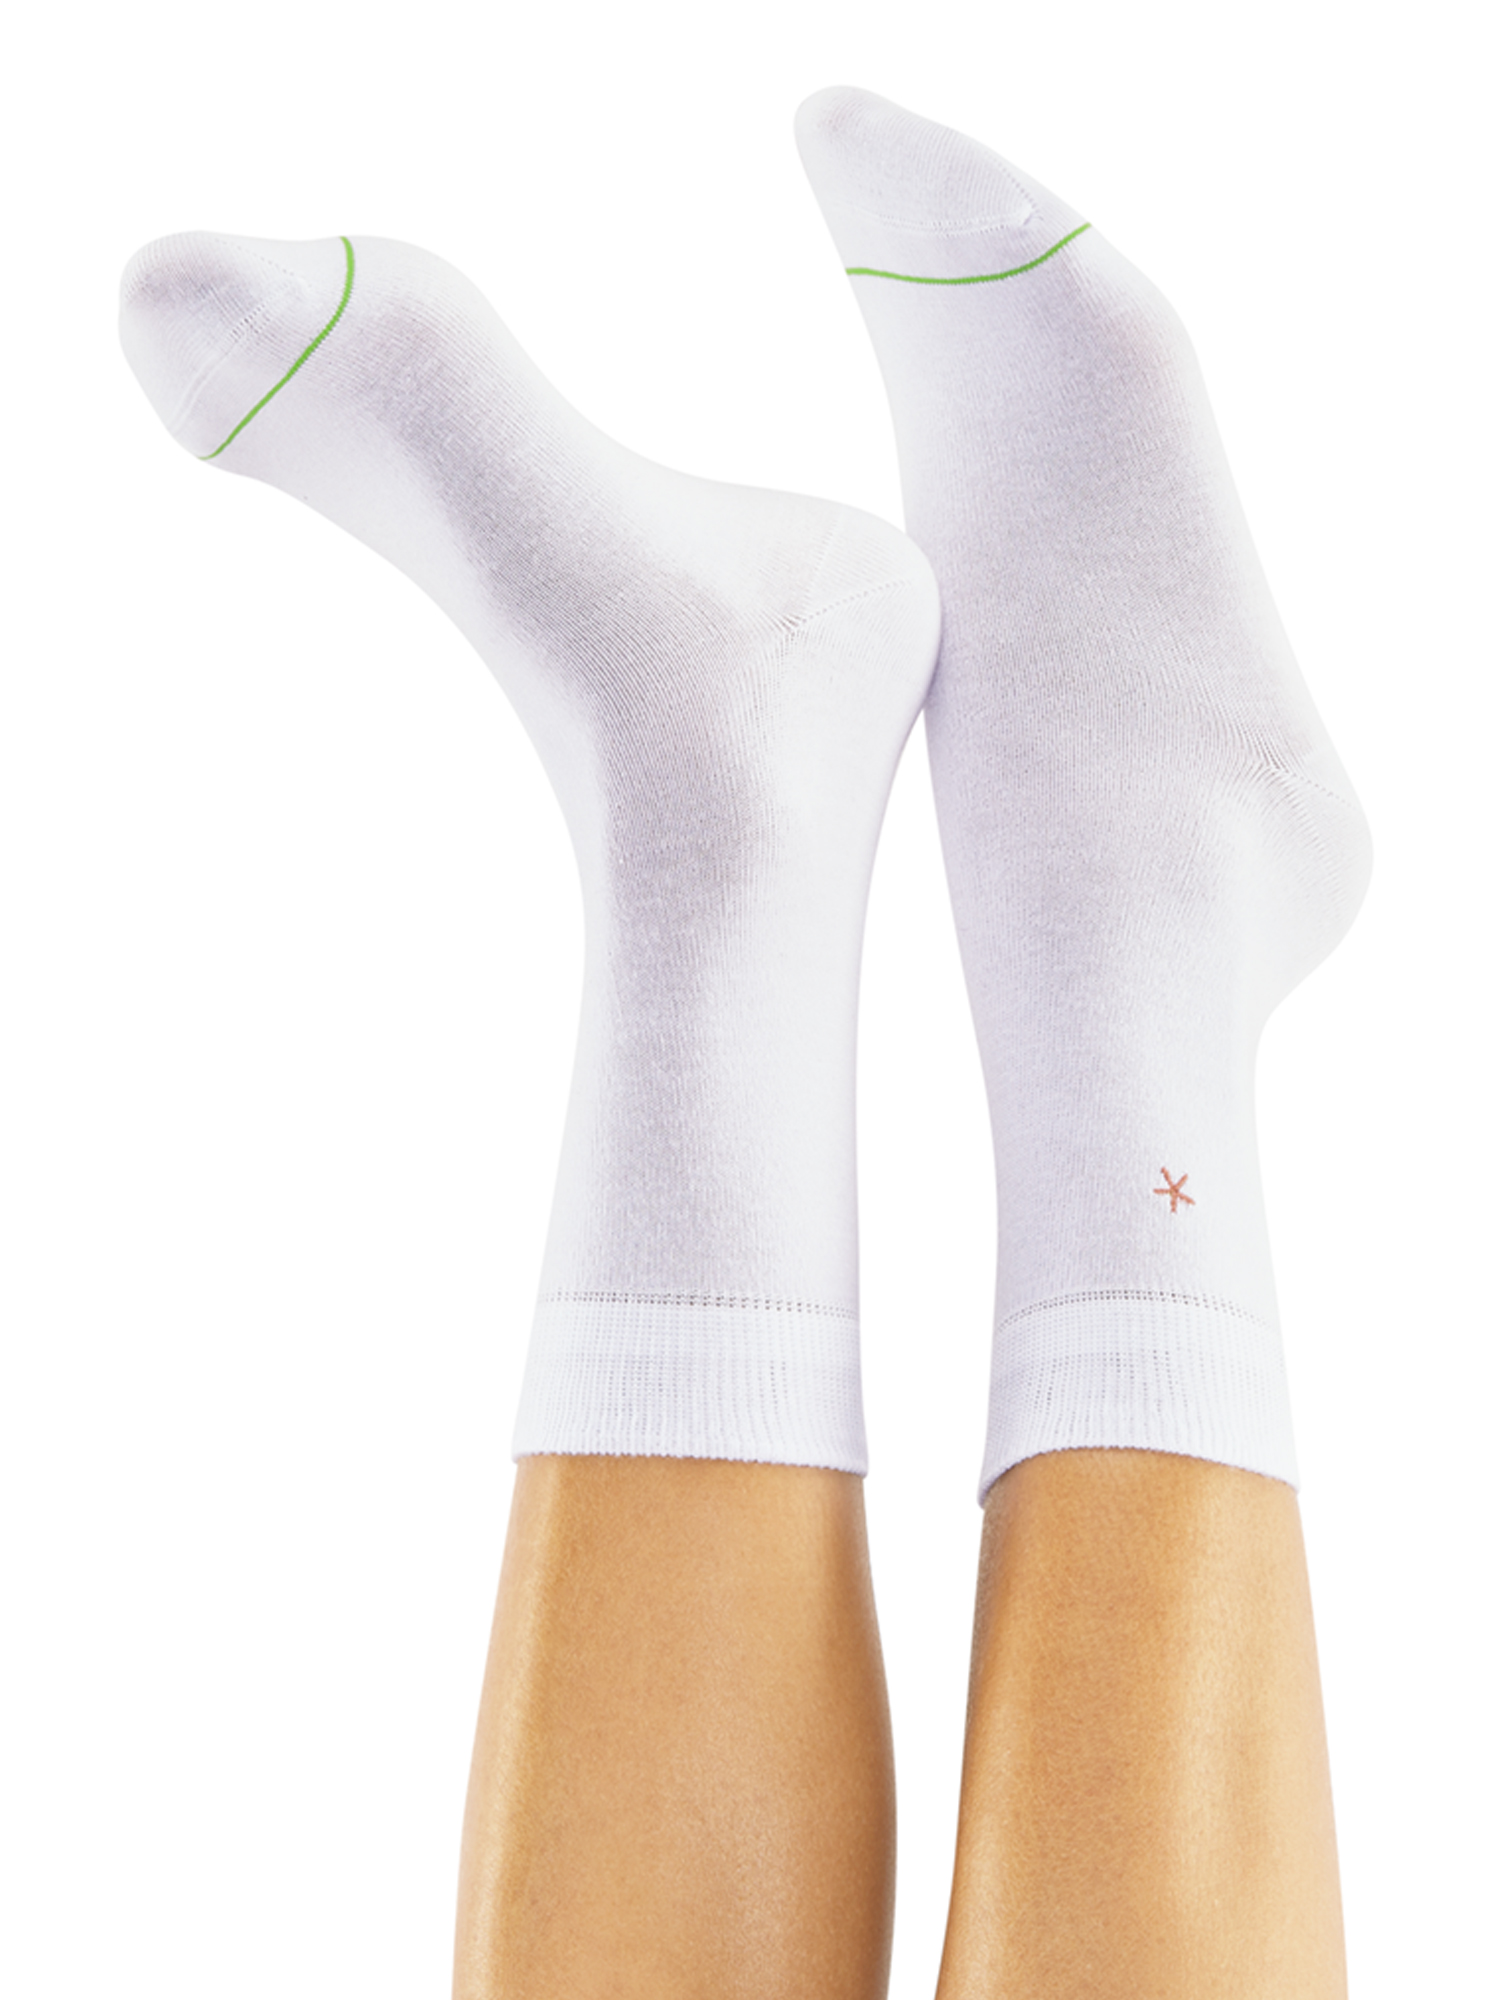 CHEERIO* Socken STARS N STRIPES in Mischfarben 